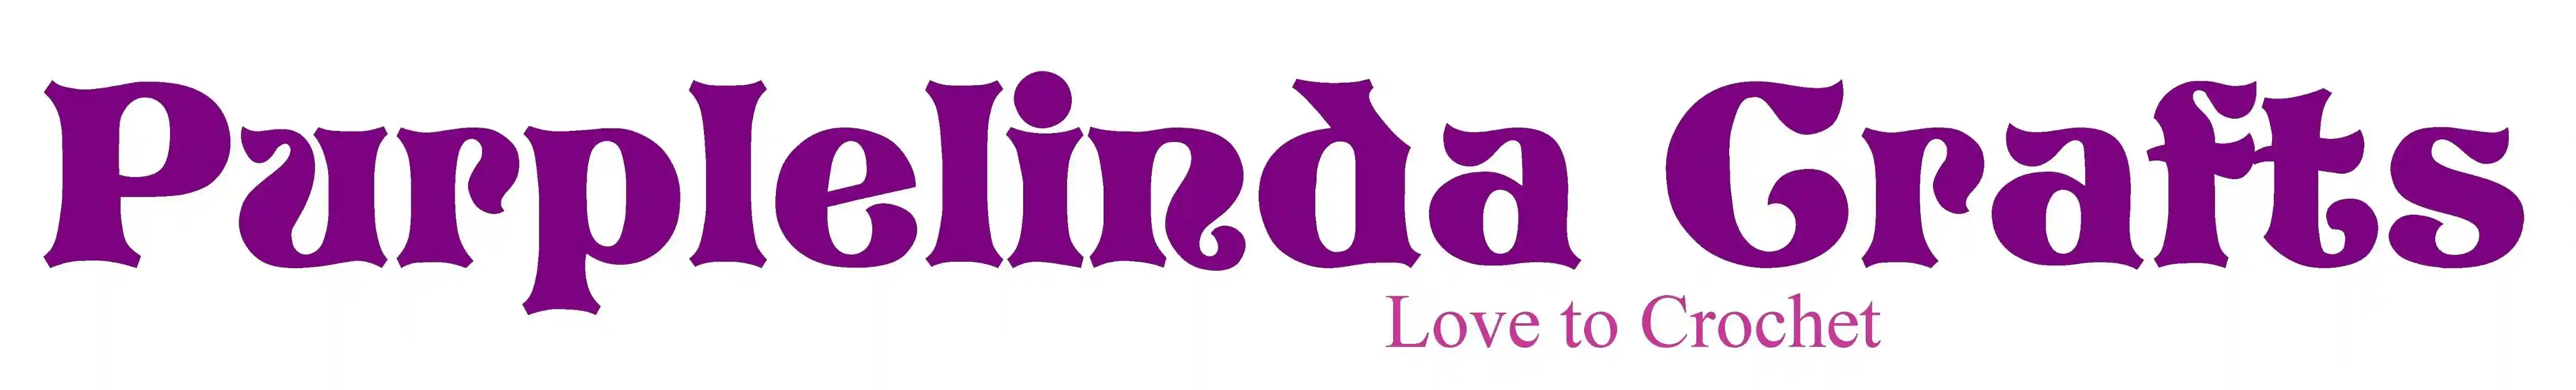 Purplelinda Crafts Code de promo 